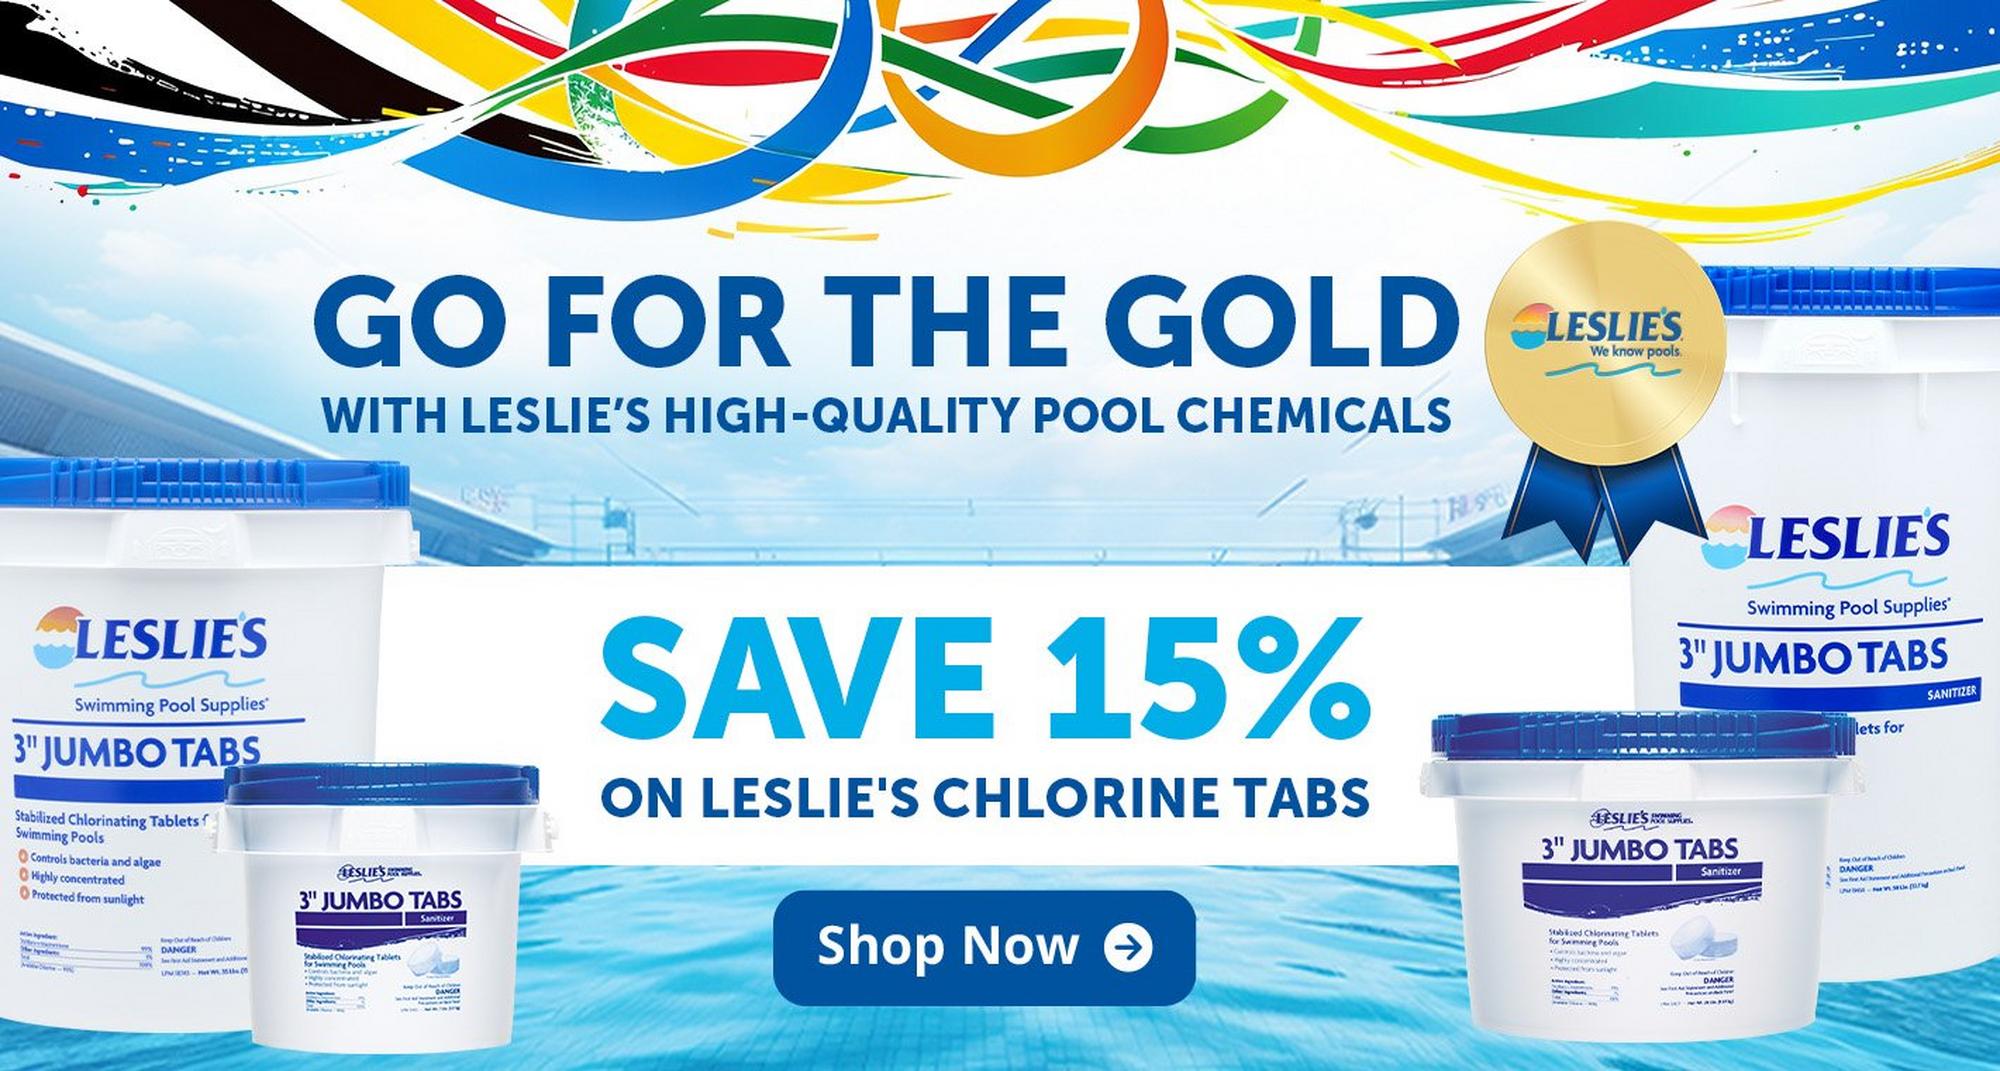 15% off chlorine tabs